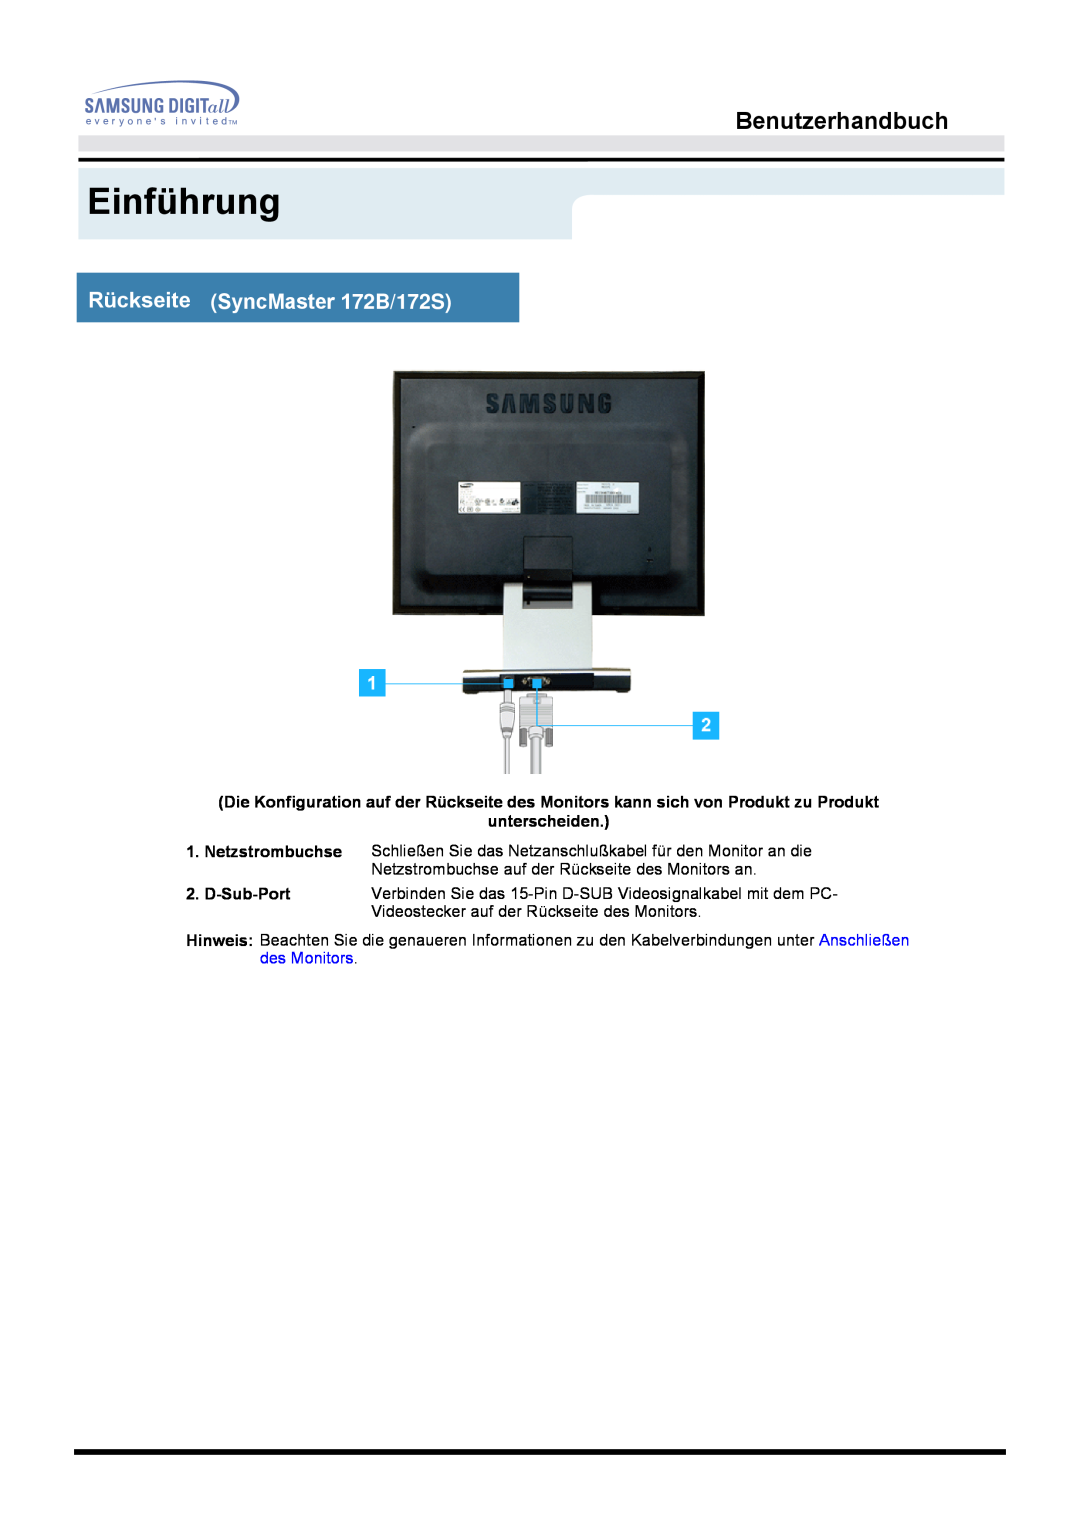 Samsung MO17ESDS/EDC, MO17PSZS/EDC Einführung, Benutzerhandbuch, Rückseite SyncMaster 172B/172S, unterscheiden, D-Sub-Port 